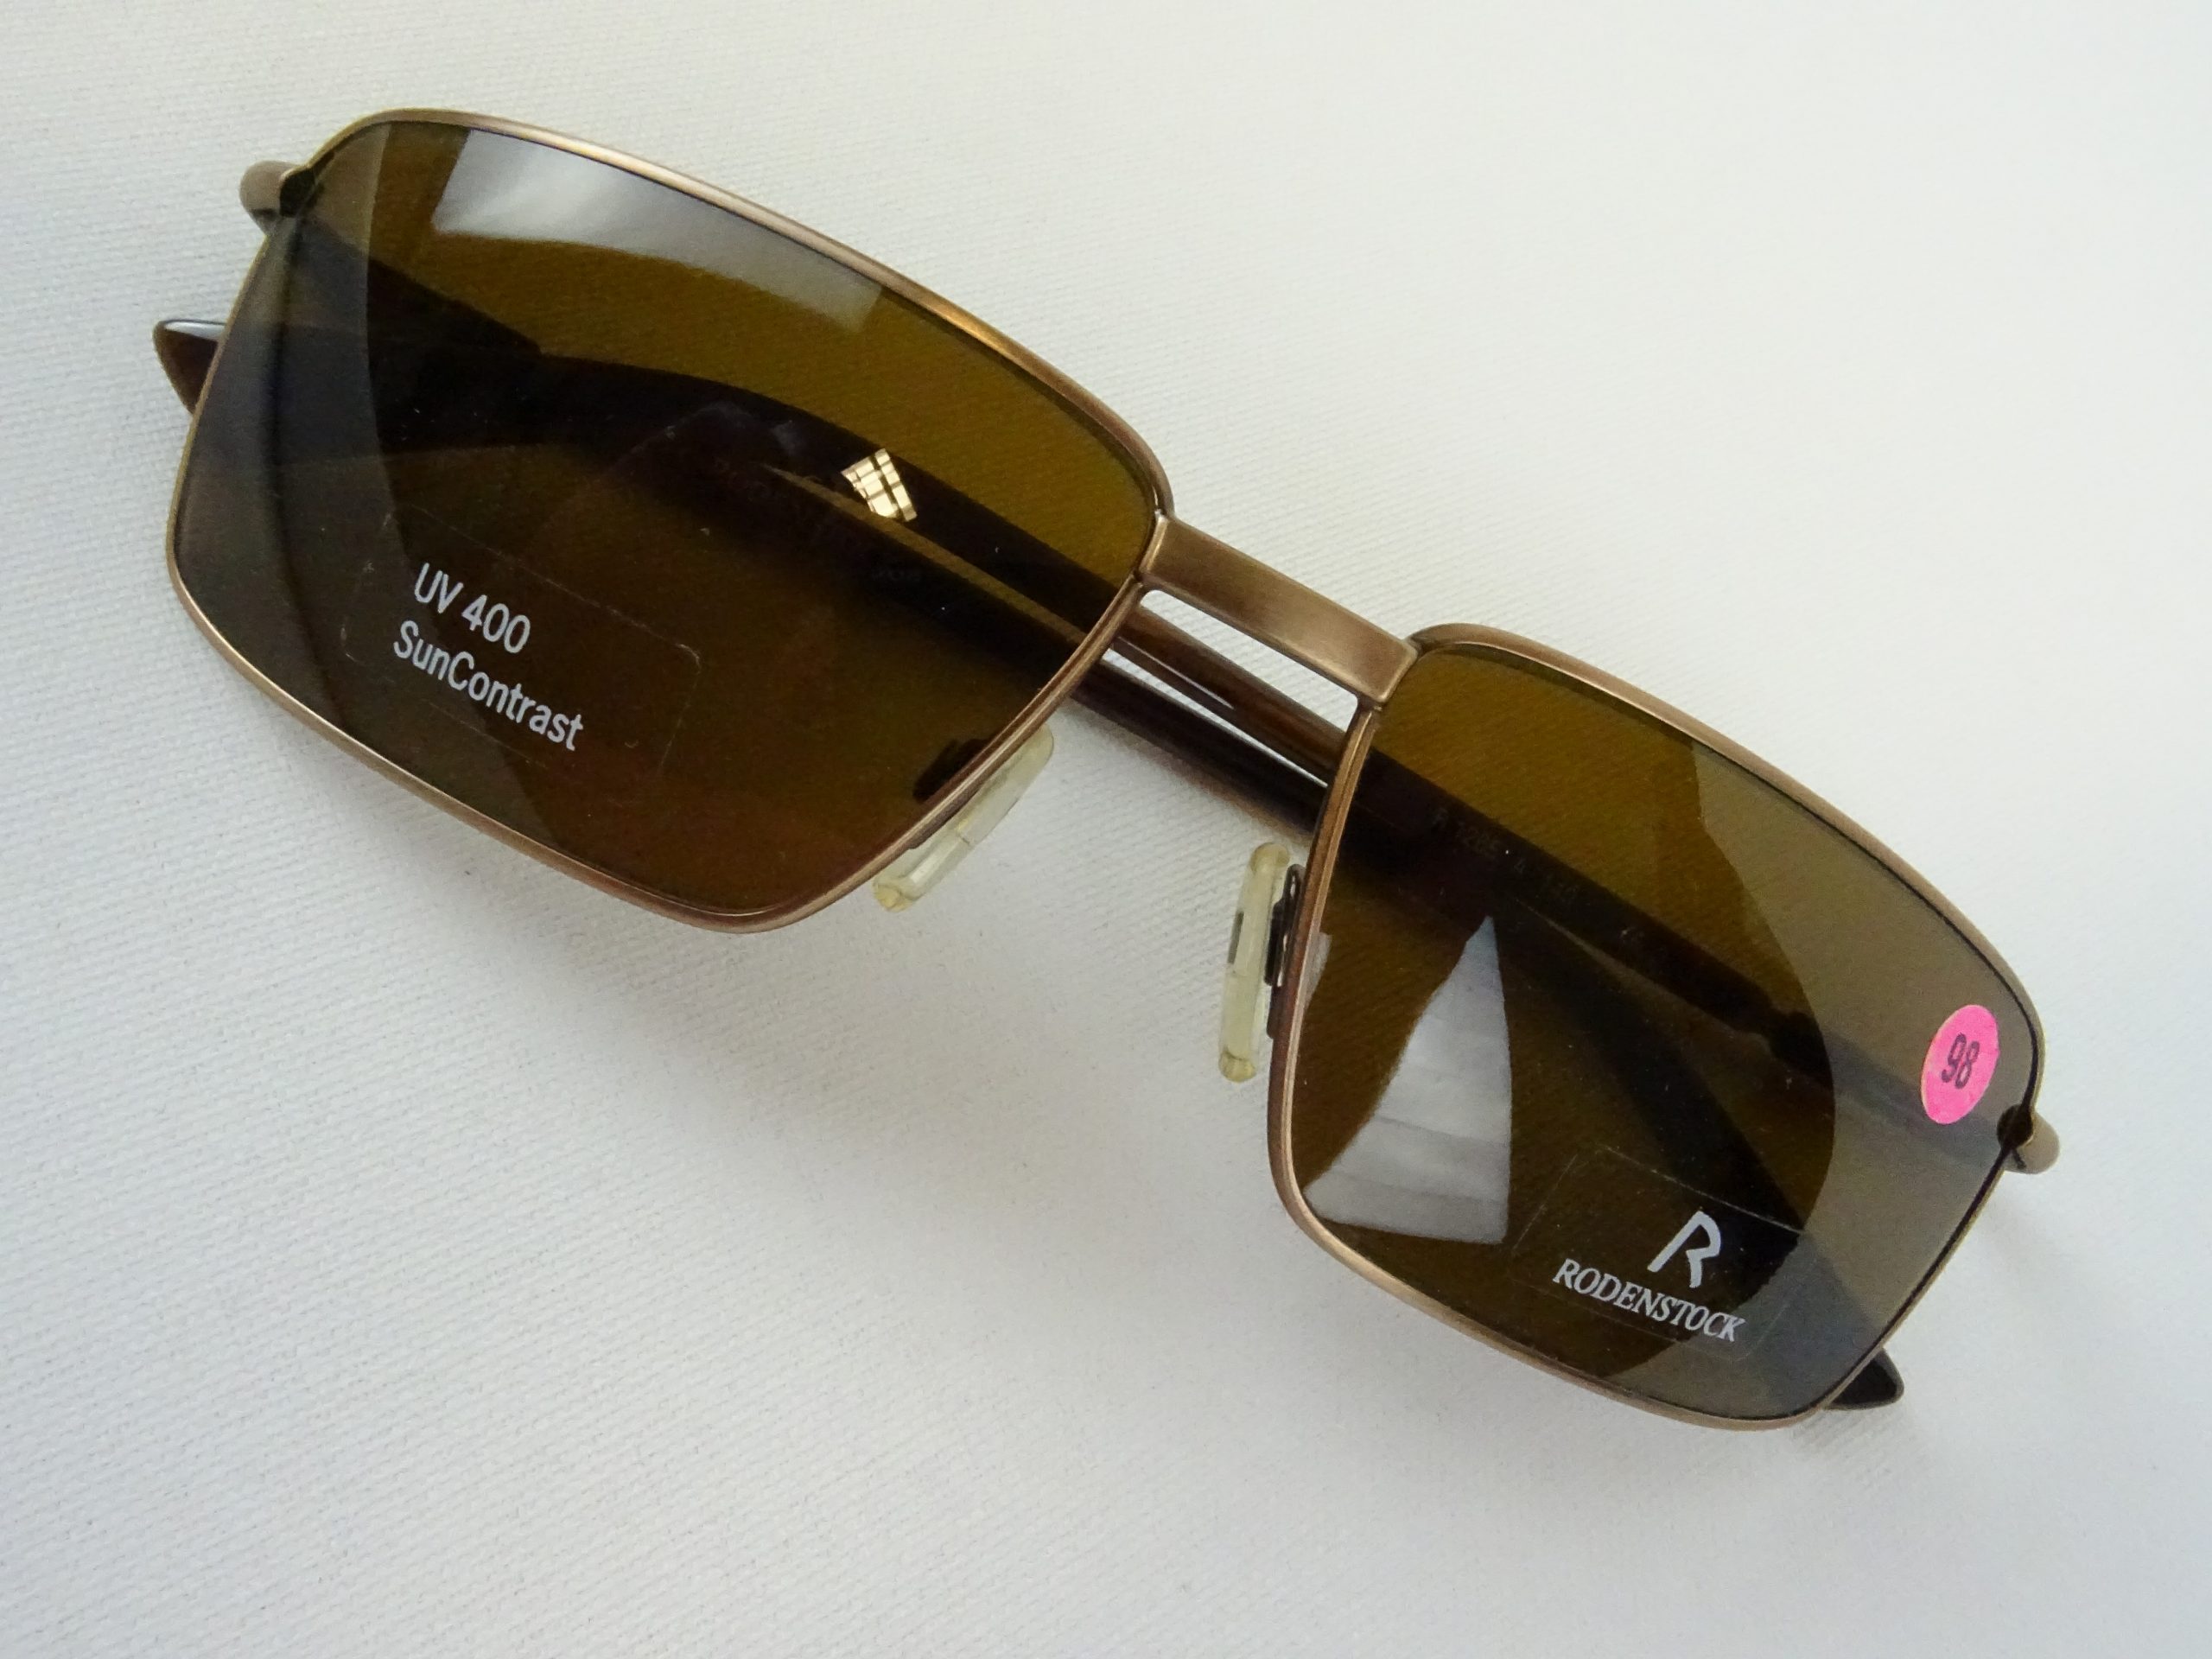 RODENSTOCK Herren Sonnenbrille SUN Brillen Welt Contrast Form – Vintage UV Metallfassung curved 400 sportlich braun M eckige Gläser Gr